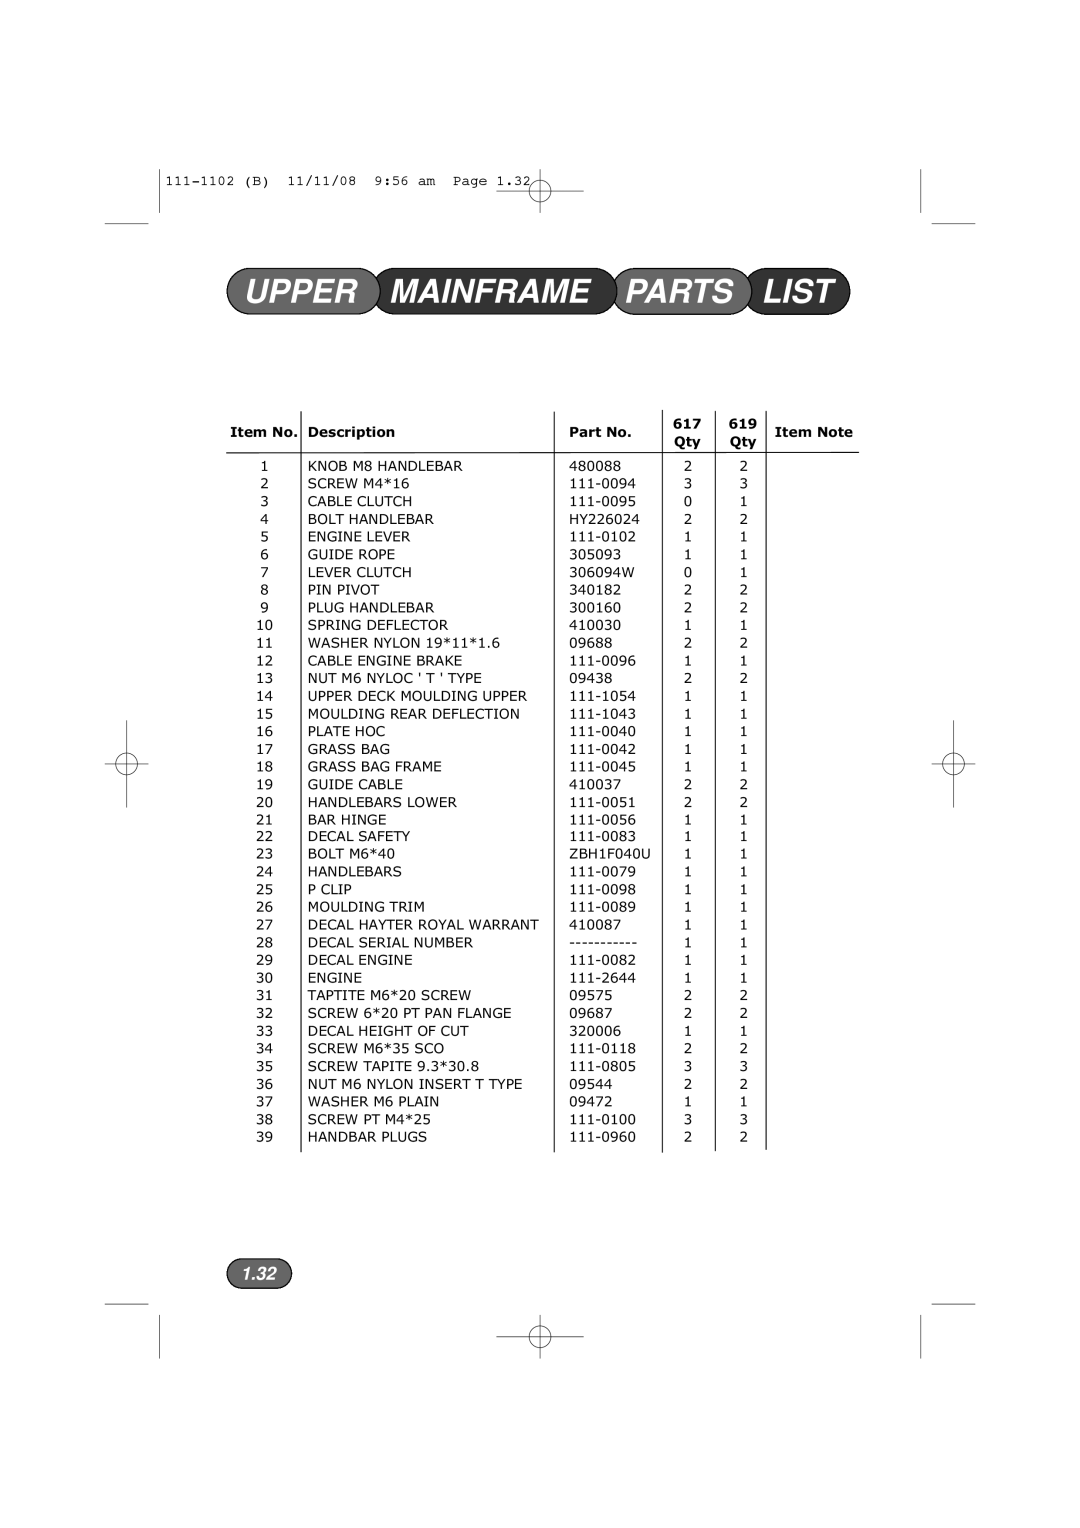 Spirit 617E, 619E manual Upper Mainframe Parts List, Item No Description 617 619 